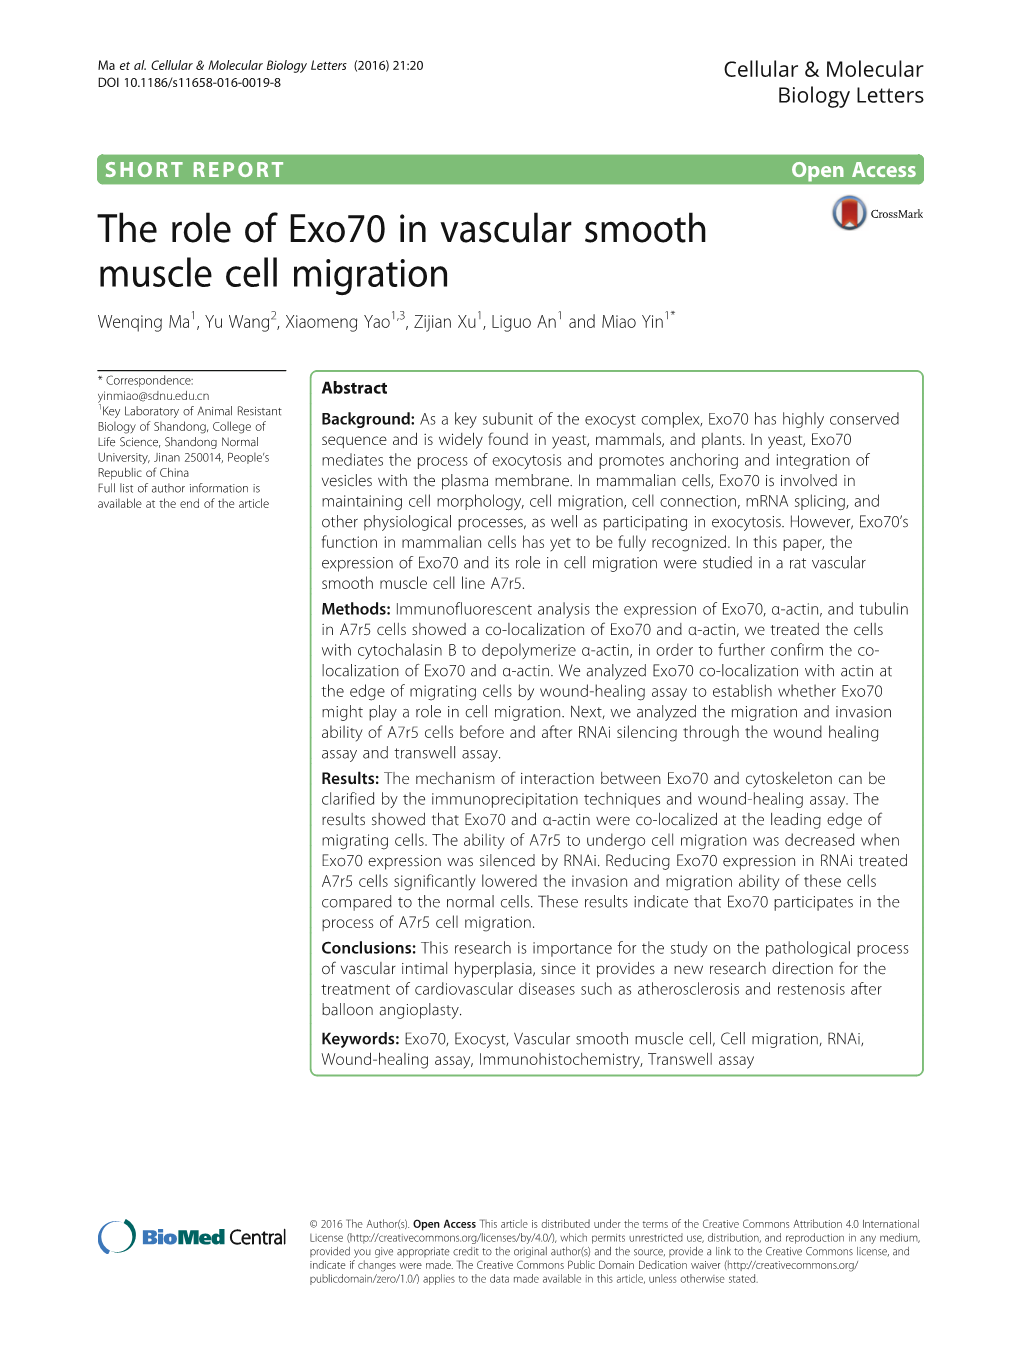 The Role of Exo70 in Vascular Smooth Muscle Cell Migration Wenqing Ma1, Yu Wang2, Xiaomeng Yao1,3, Zijian Xu1, Liguo An1 and Miao Yin1*